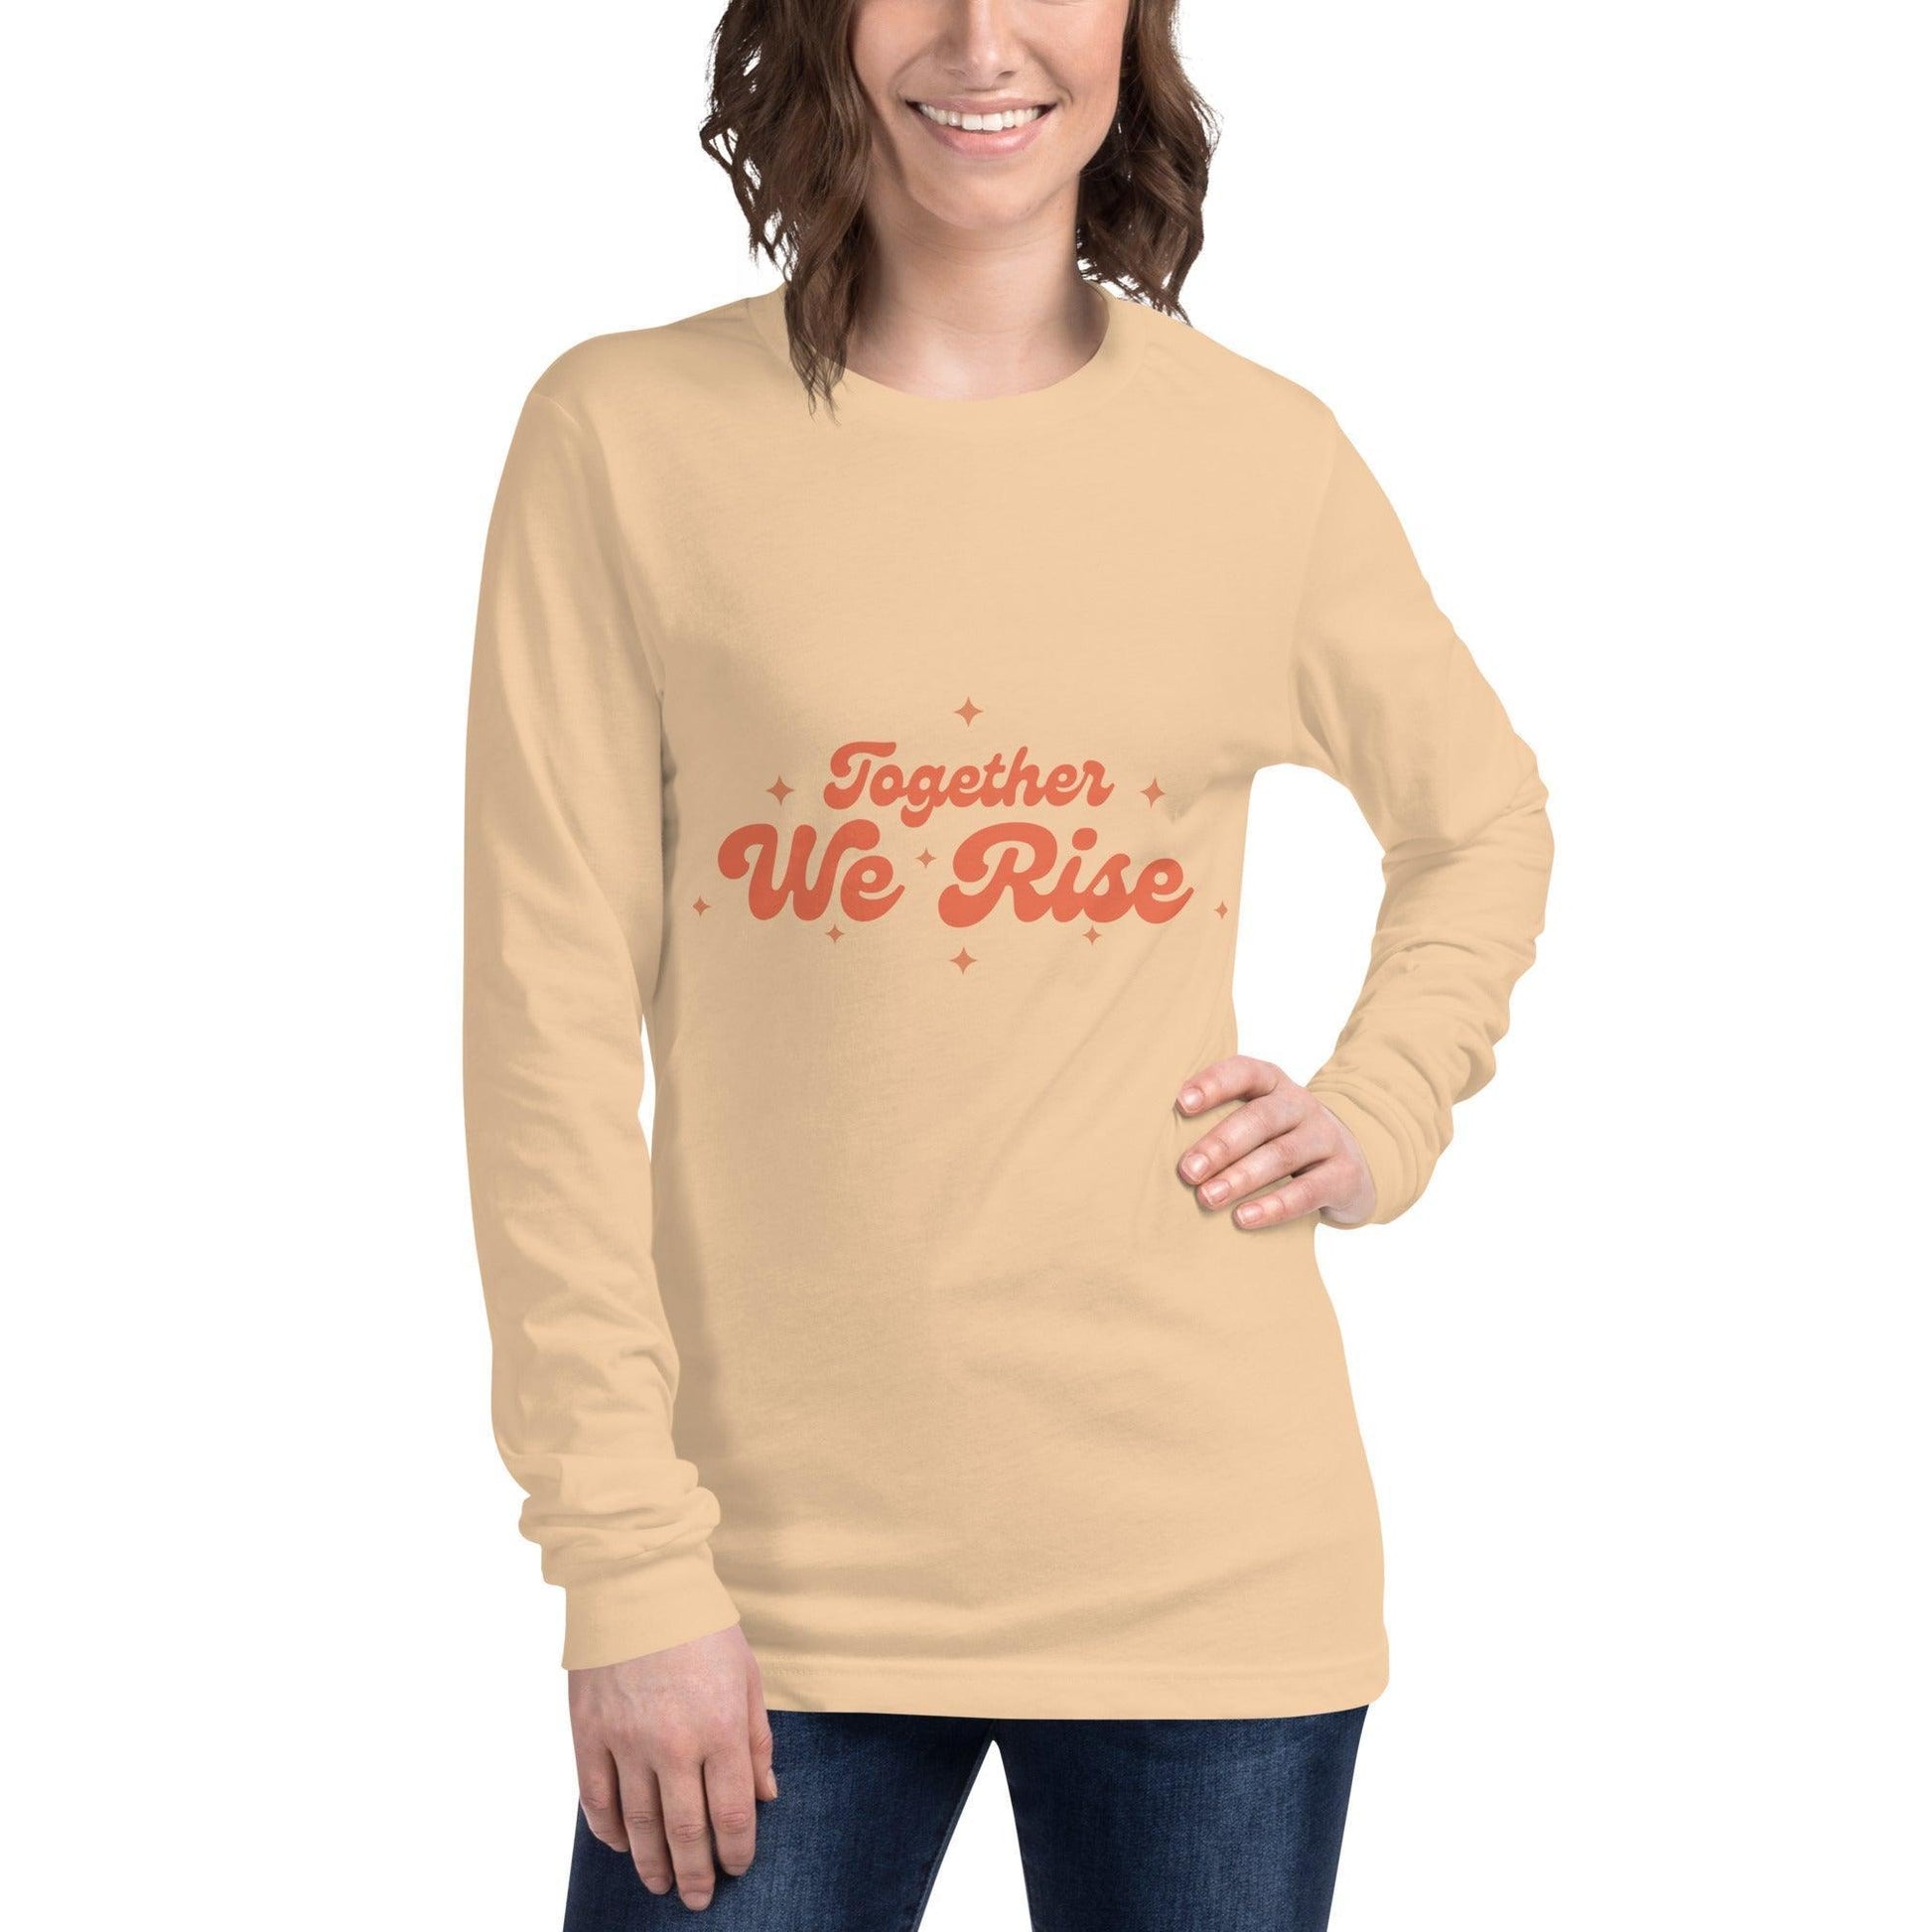 Camiseta manga larga "We Rise" | ¡La camiseta versátil perfecta para cualquier ocasión! - Silvornique